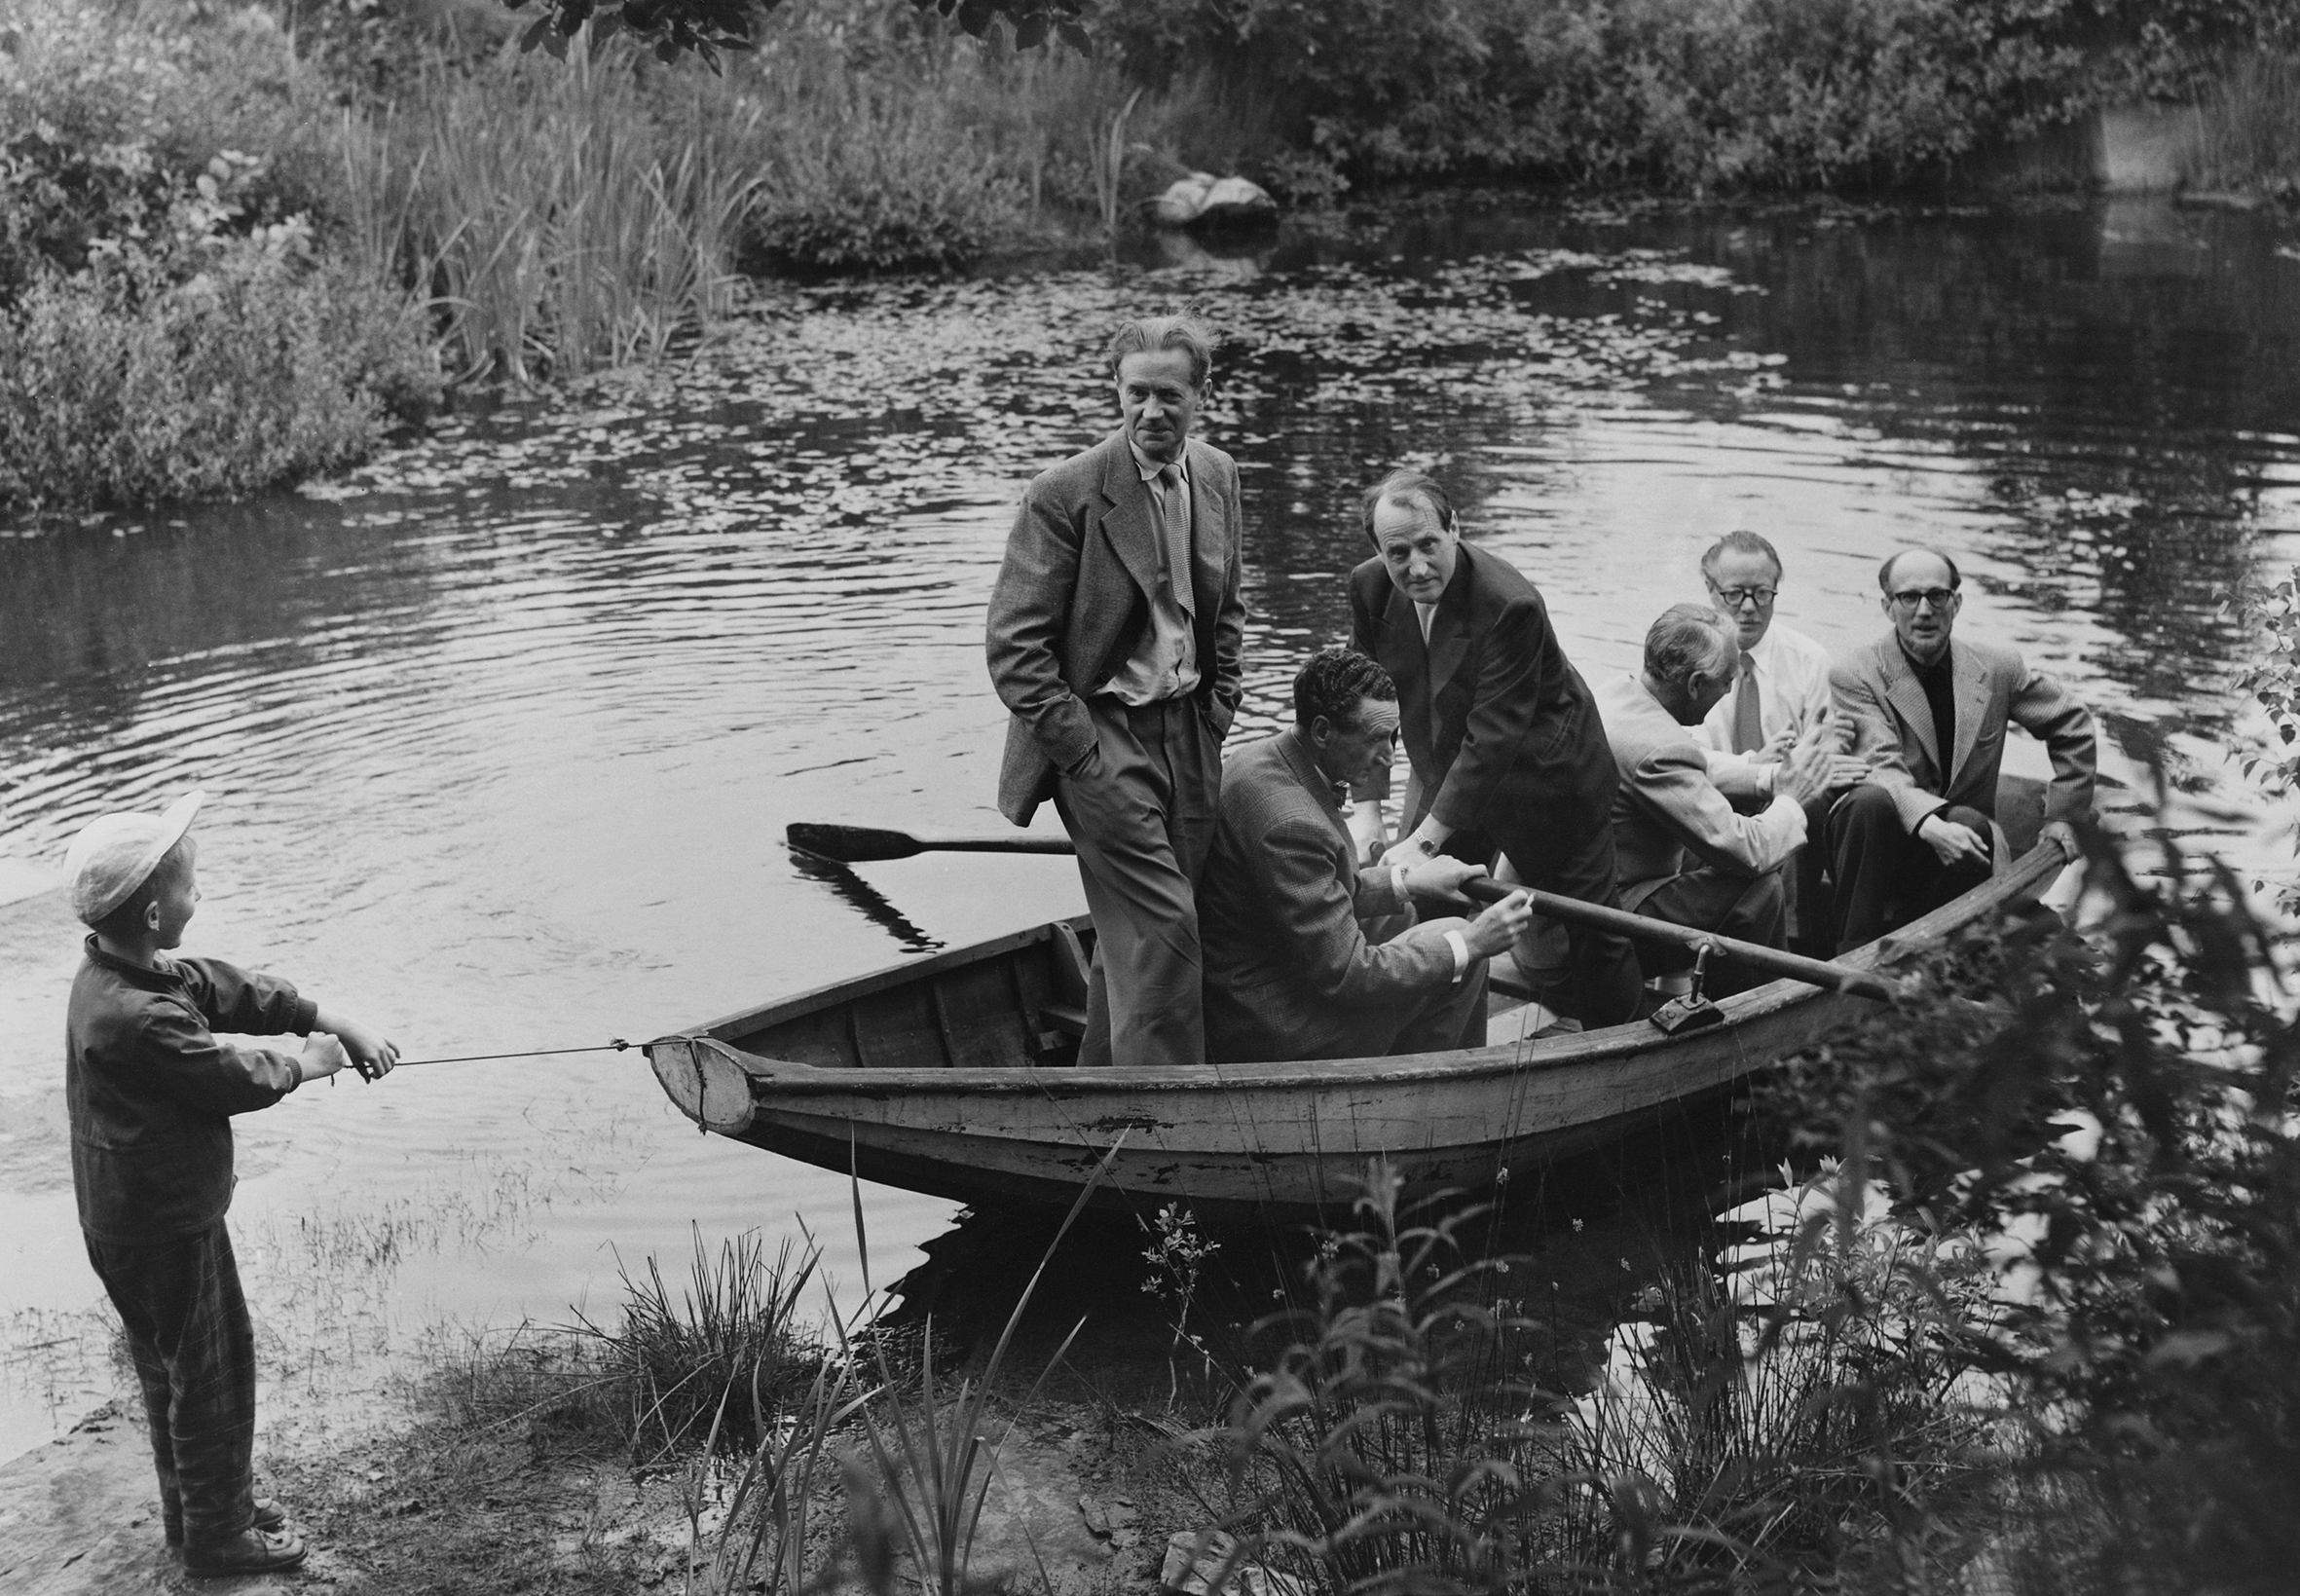 Gammalt svartvitt fotografi med sex män i en eka och en liten pojke som håller på att dra iland ekan.